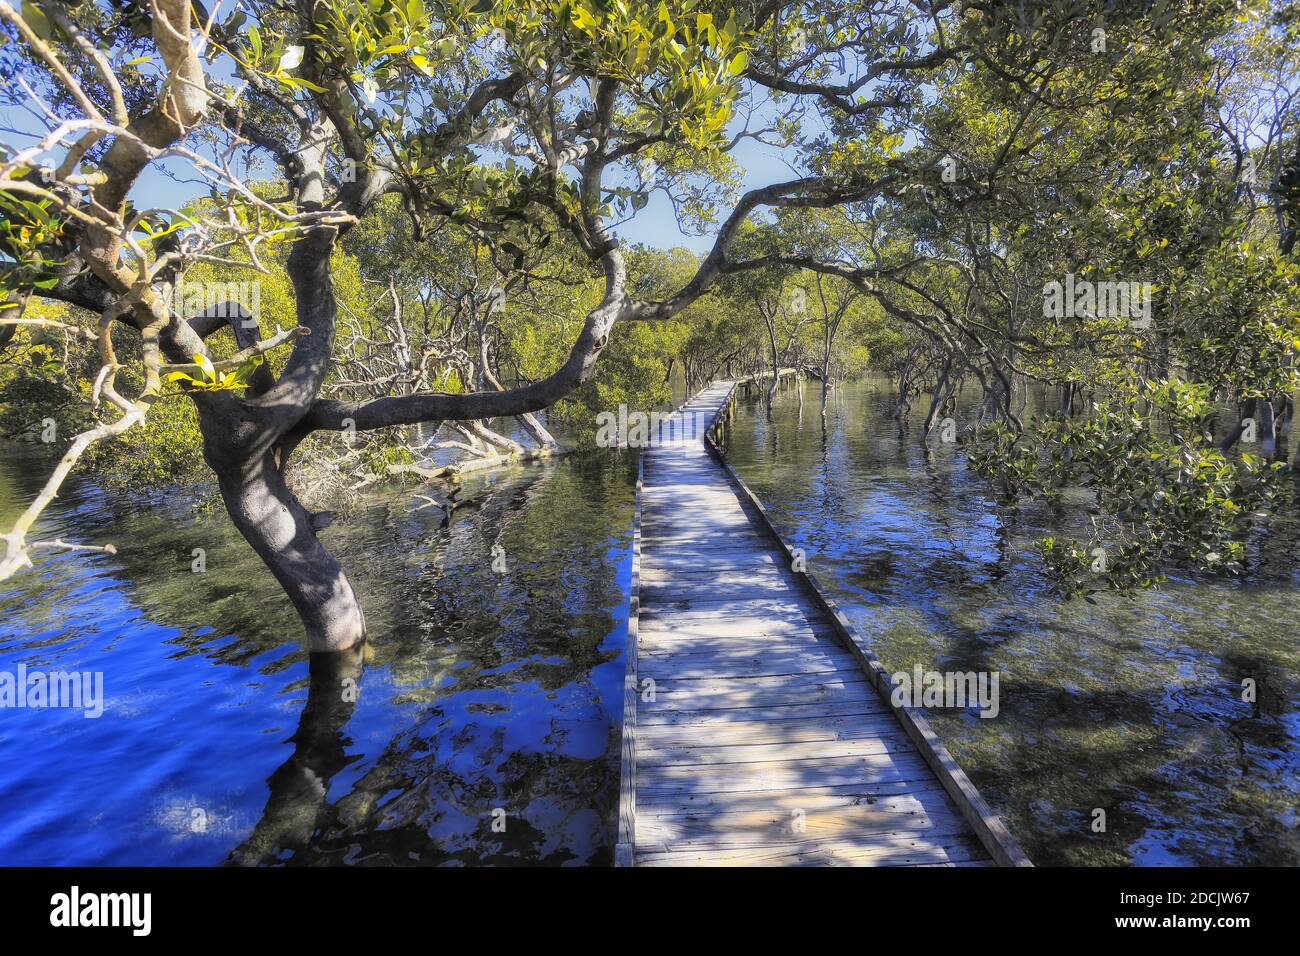 Holzboardwalk im Mangrovenwald der Jervis Bay Area in Australien - seichtes Wasser des lokalen Seeufer-Baches. Stockfoto